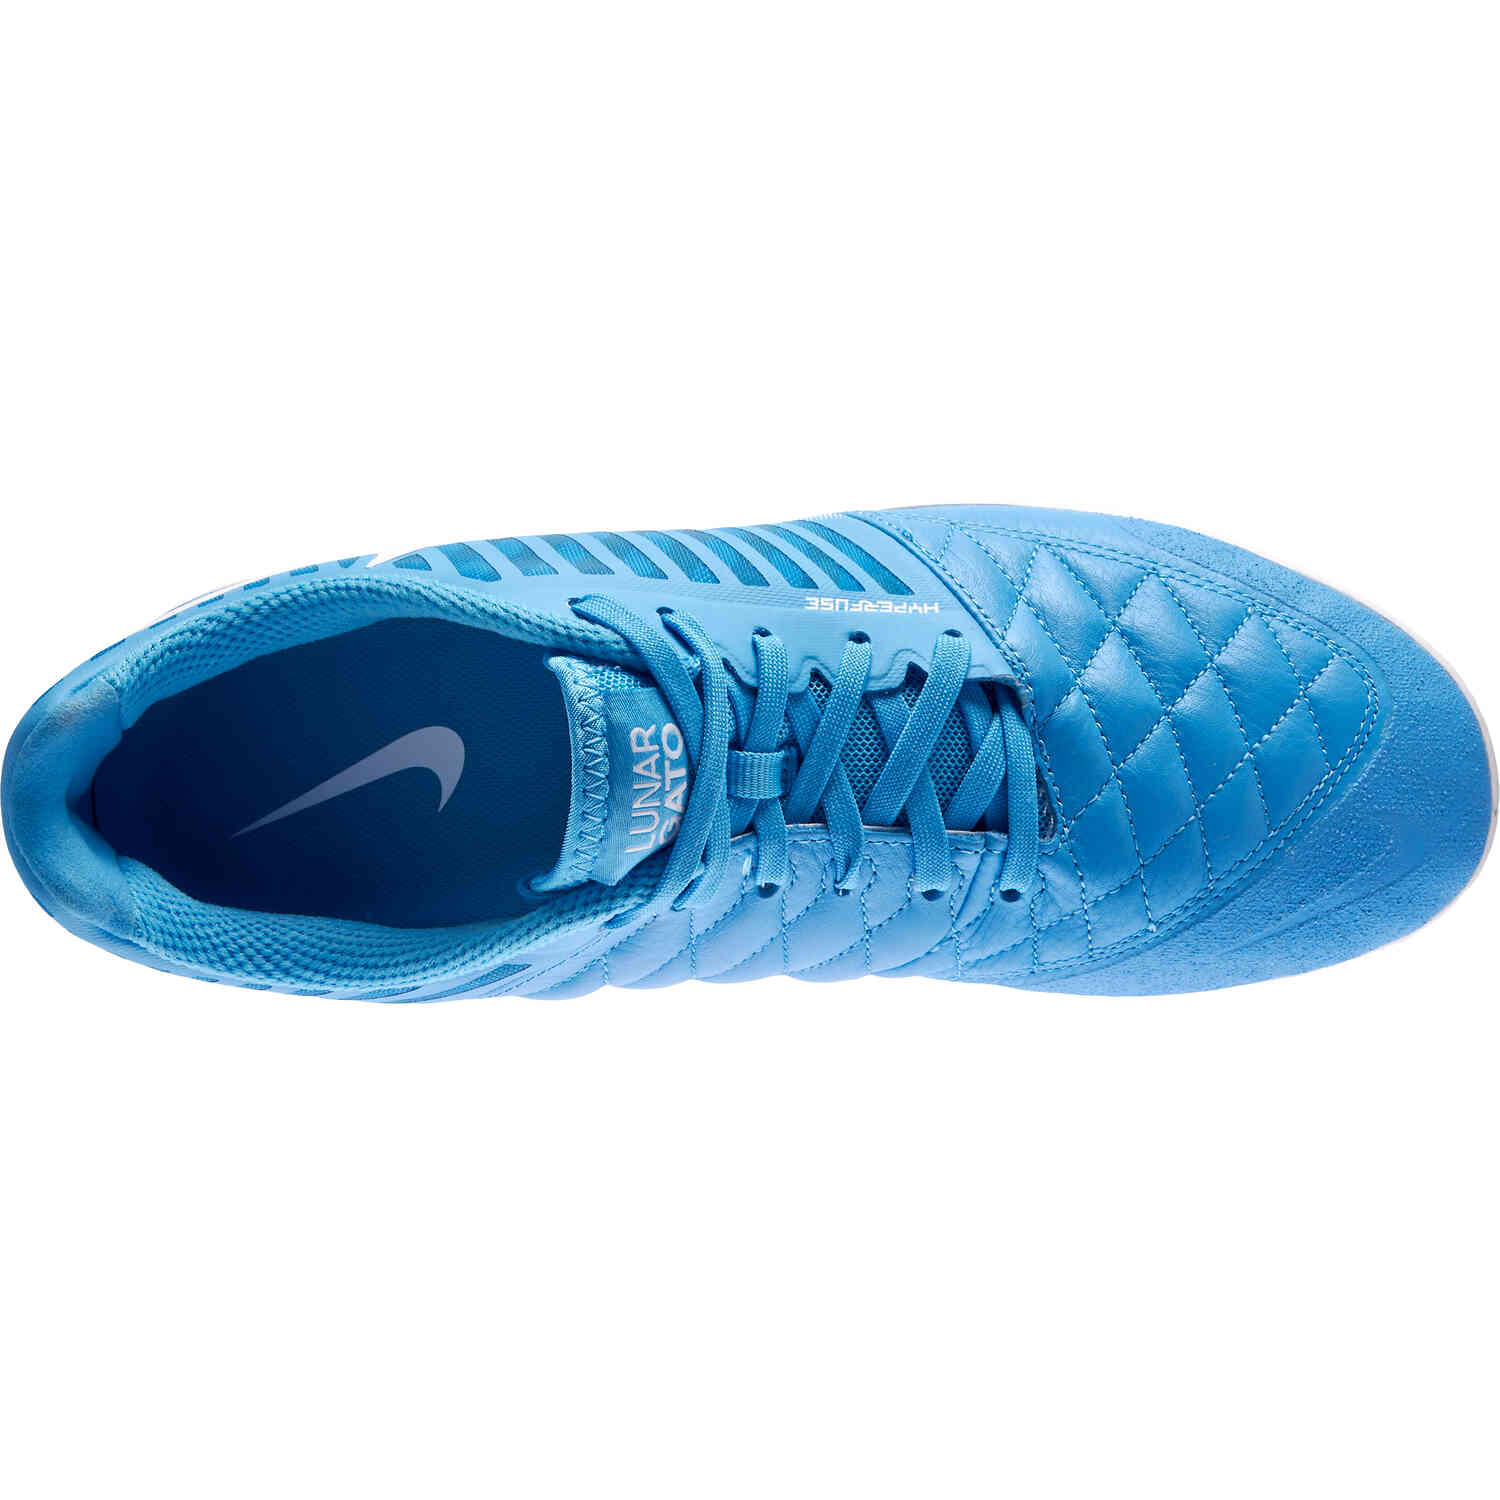 Nike Lunargato II IC – University Blue & White with University Blue